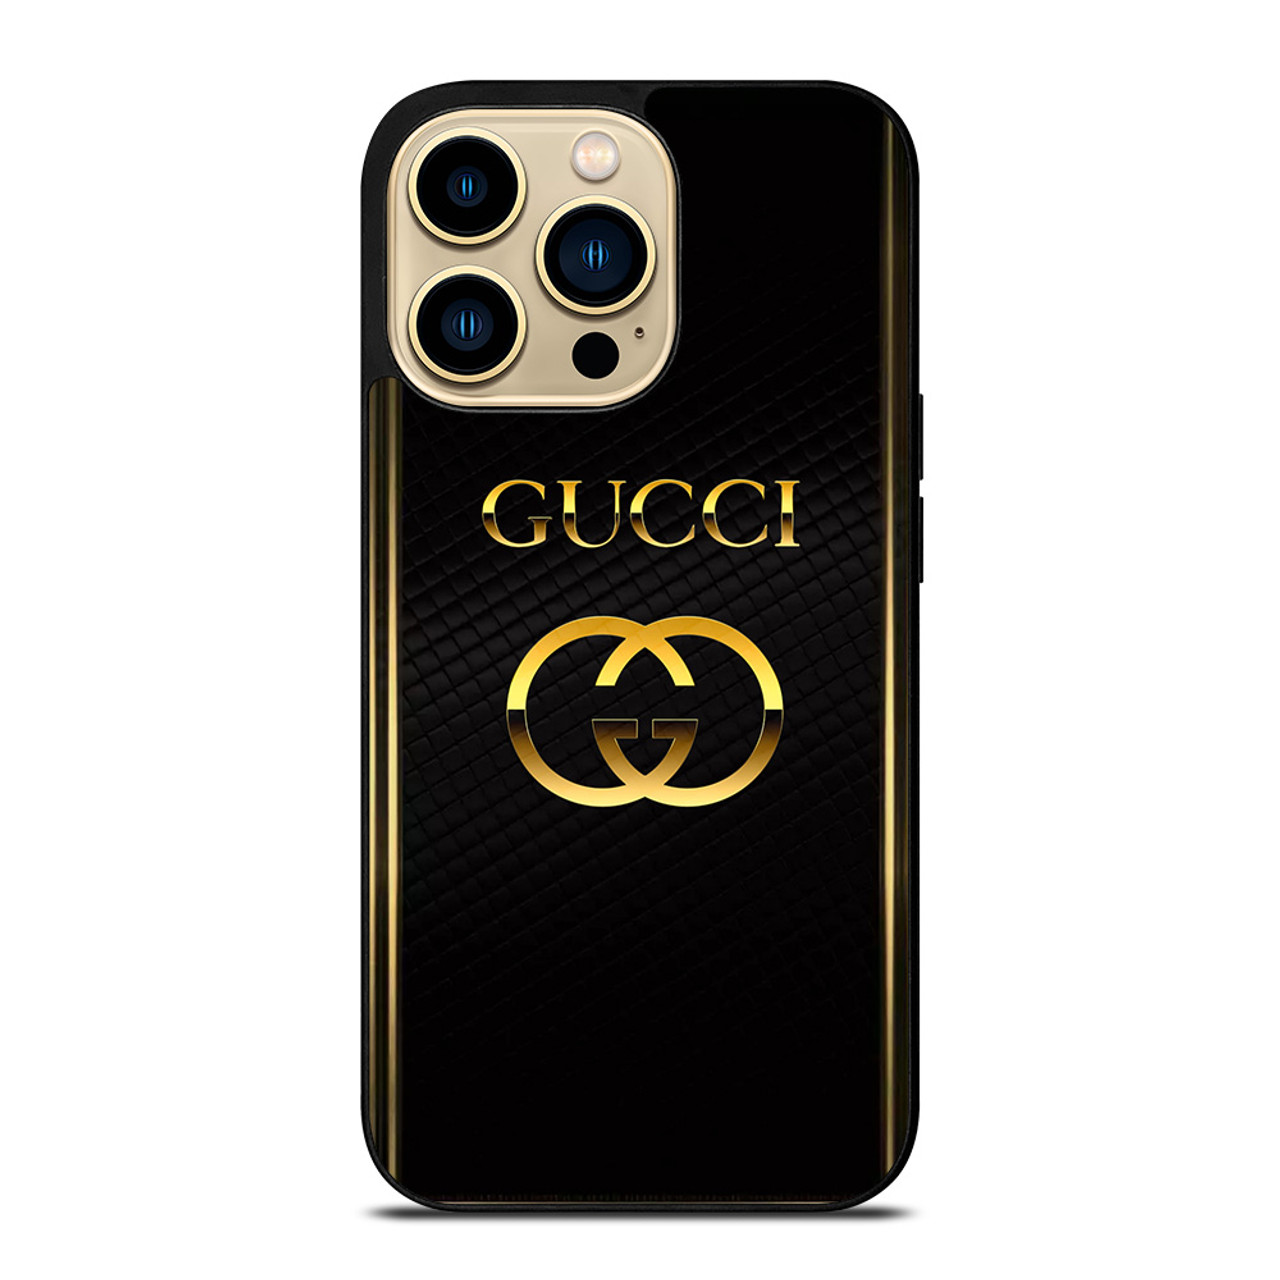 GUCCI GG Supreme 625714 iPhone 11 Pro Max Case Cover